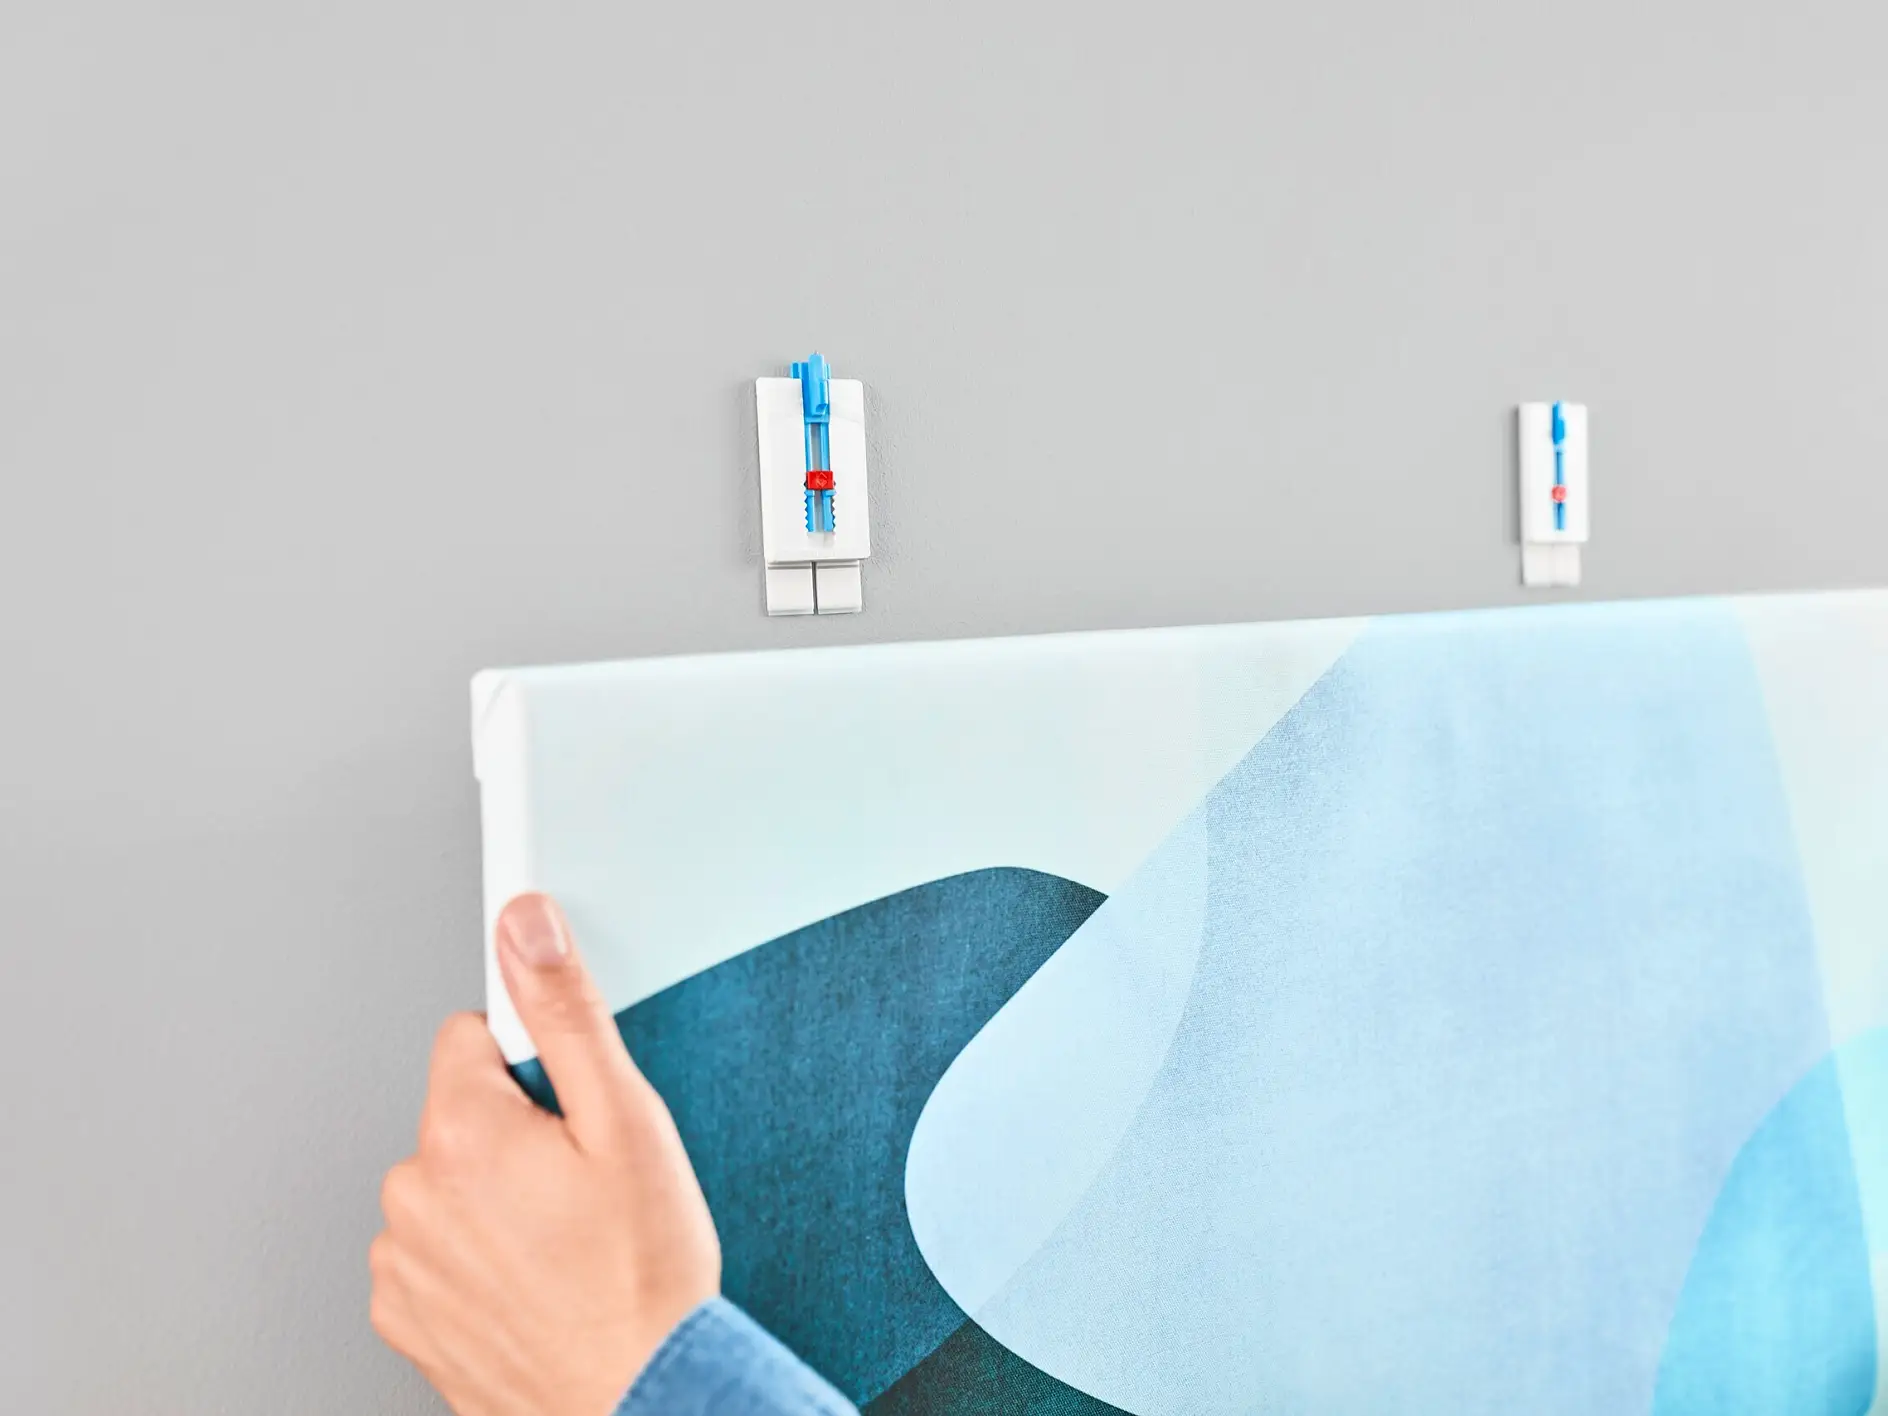 [en-en] tesa SMS adjustable nail for canvas for wallpaper up to 2kg, step 5 of 6